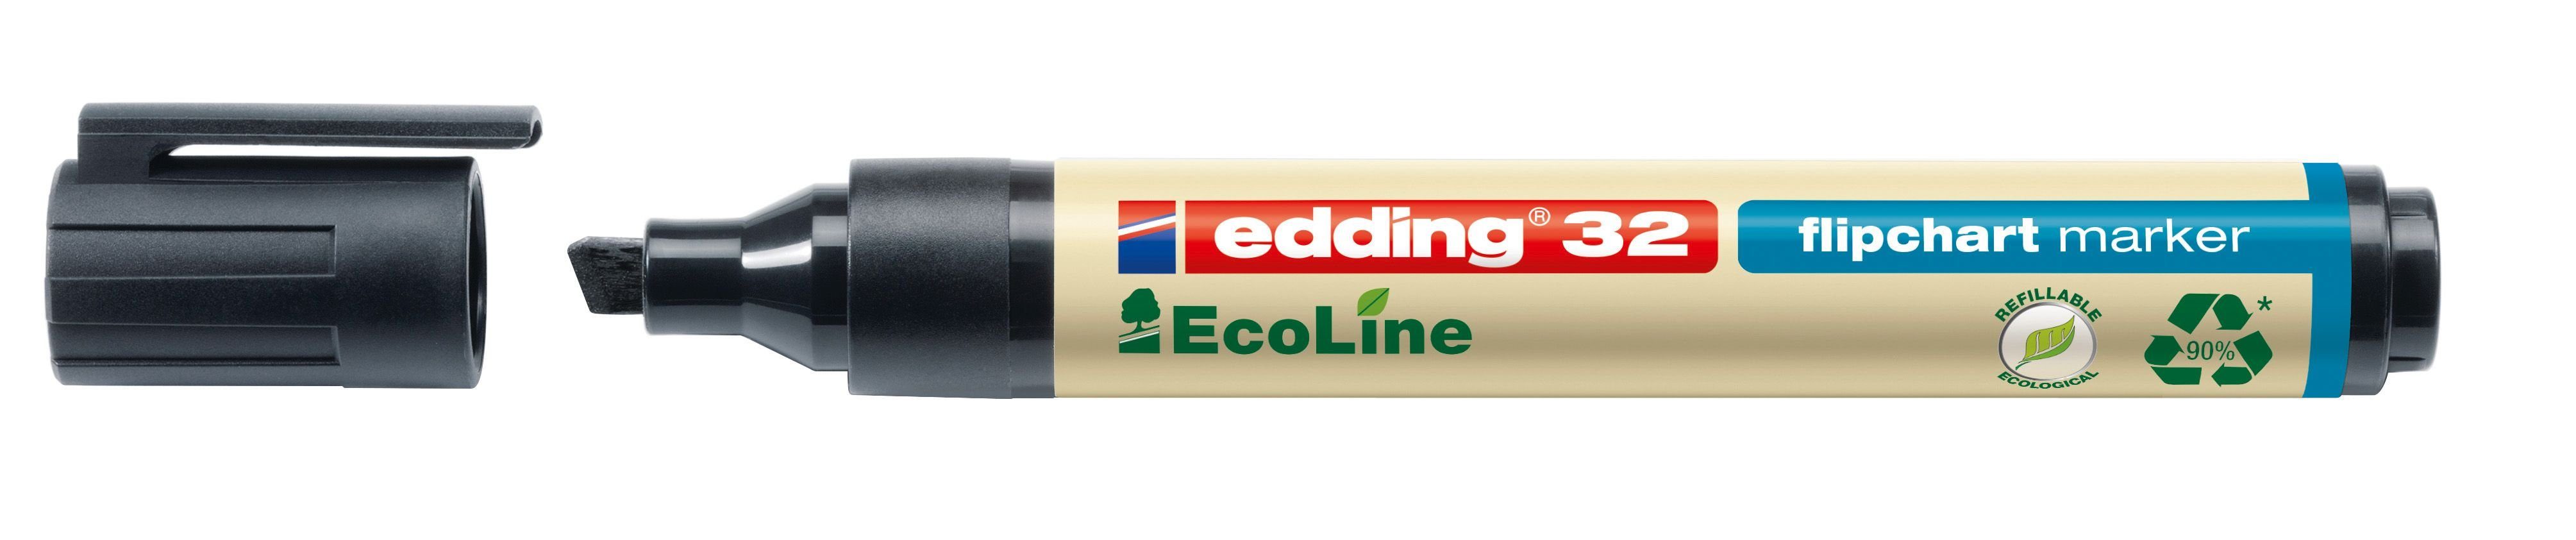 Flipchartmarker mm, - Dekokissen schwarz EcoLine - 1 5 nachfüllbar, edding 32